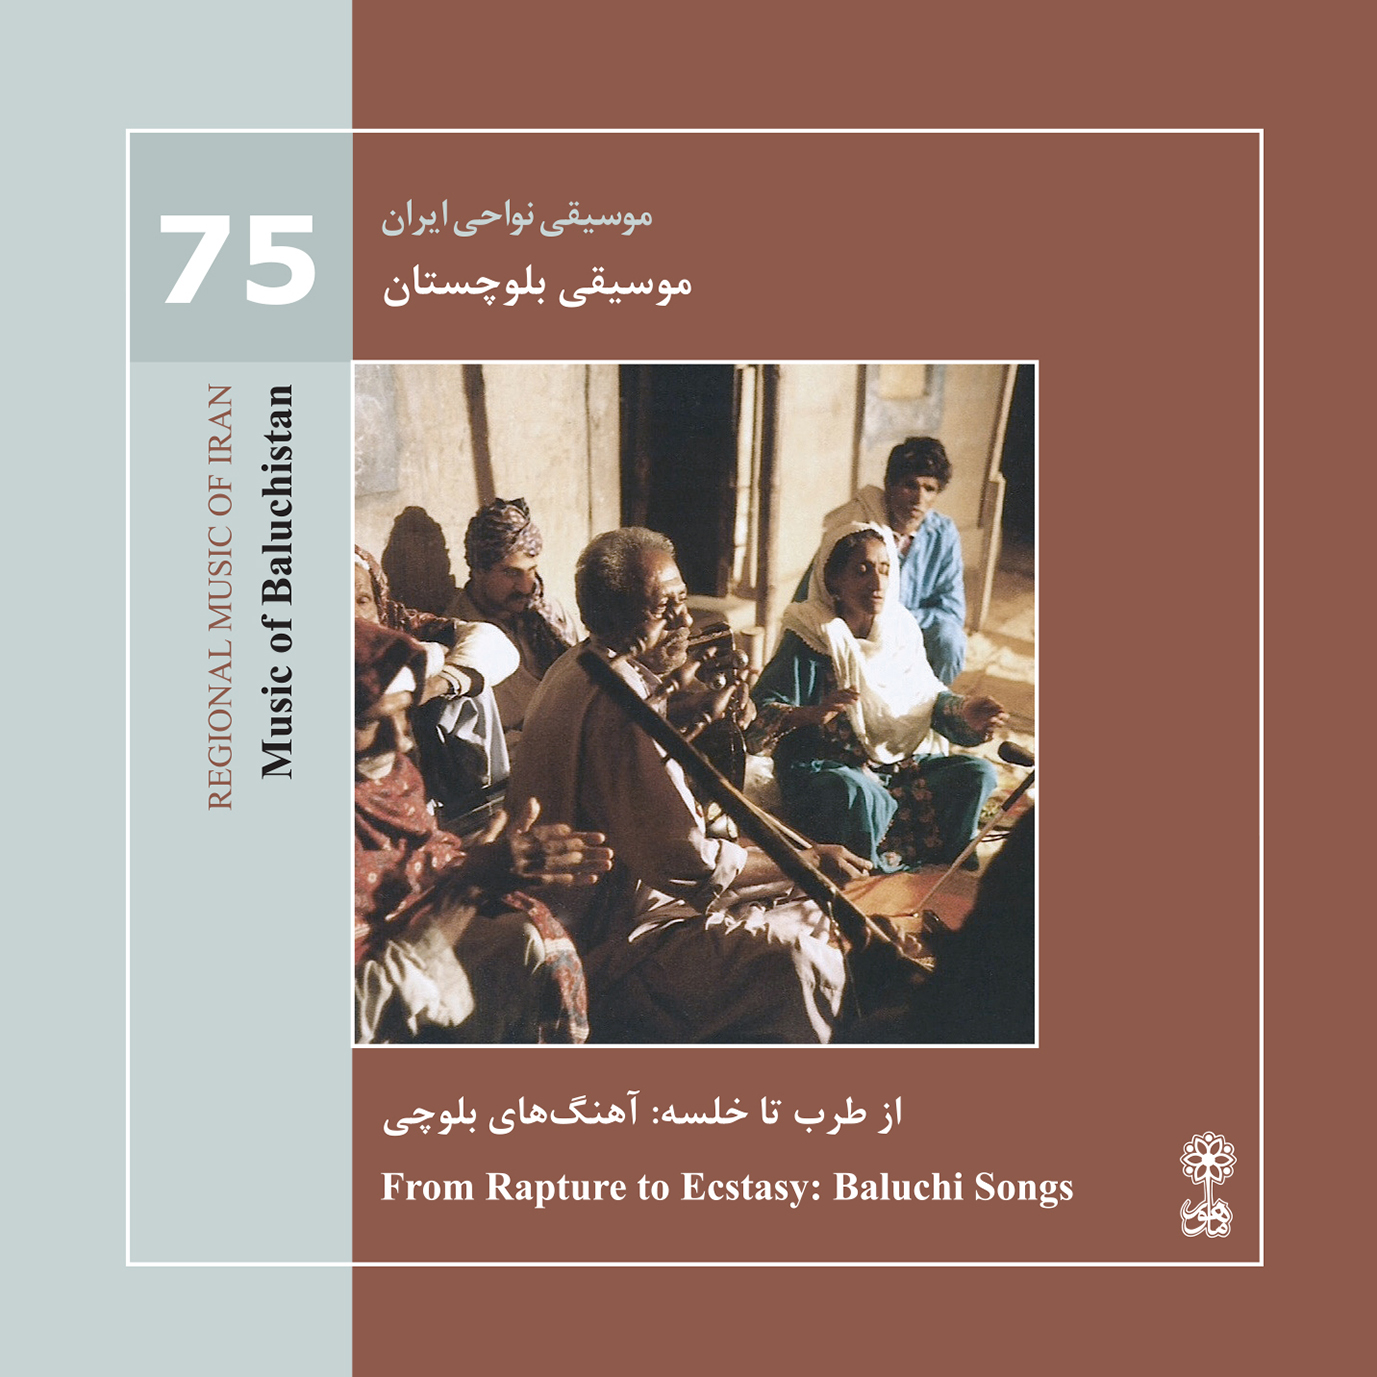 Music of Baluchistan (Regional Music of Iran 75)